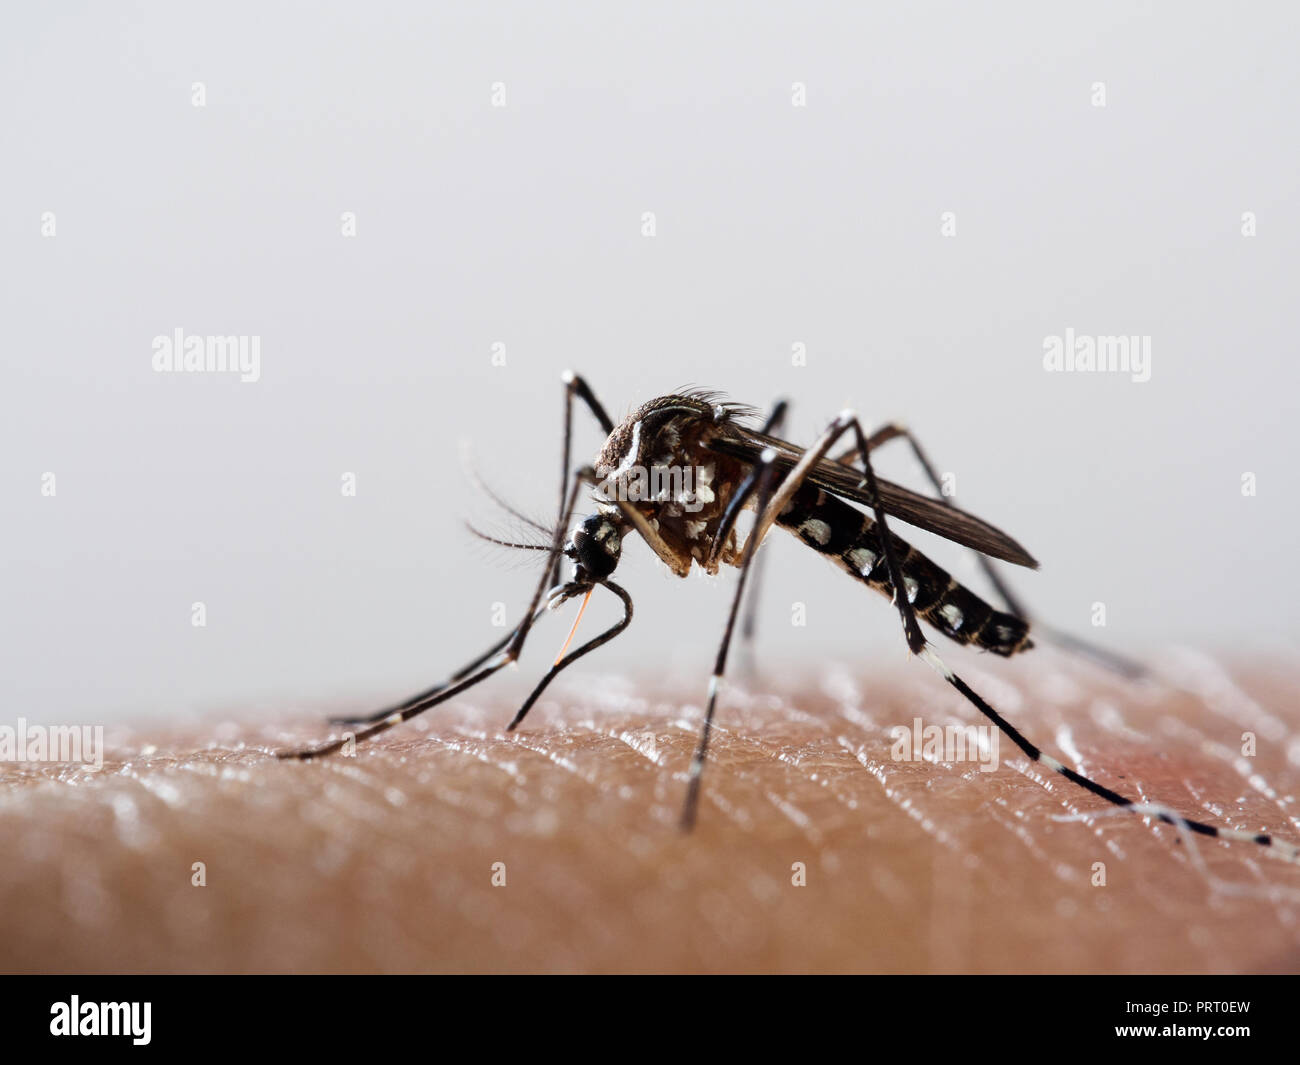 Mosquito Aedes Aegypti Mosquito Da Dengue A Chupar La Sangre En La Piel Humana Vector De La